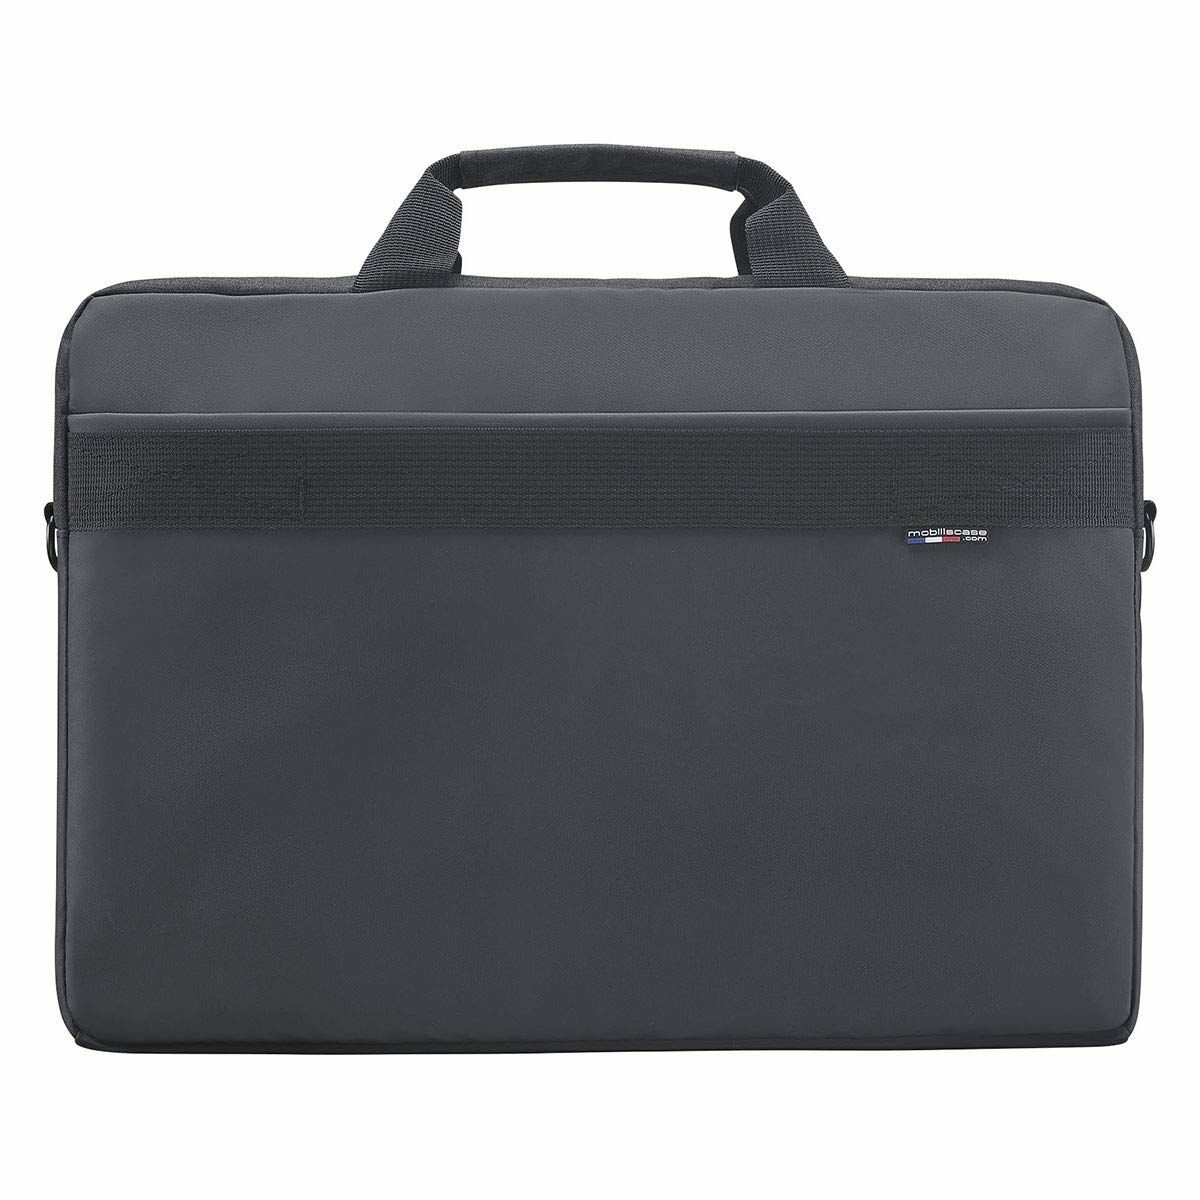 Laptop Case Mobilis 025023 Black 16"